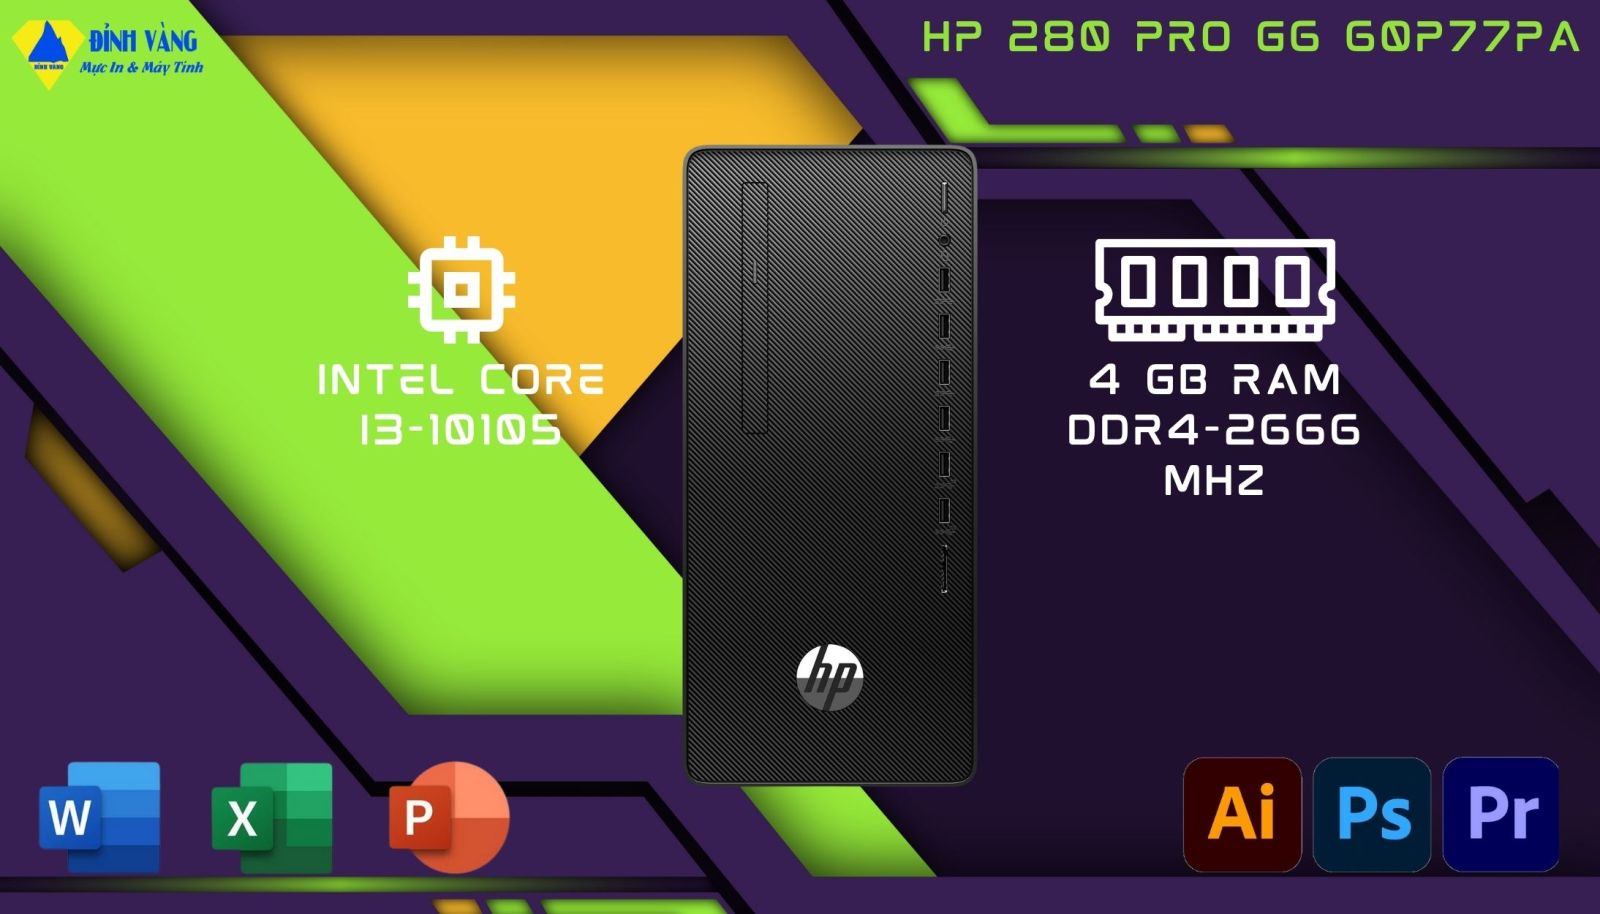 Sự ổn định và hiệu suất đáng tin cậy từ máy tính để bàn HP 280 Pro G6 60P77PA